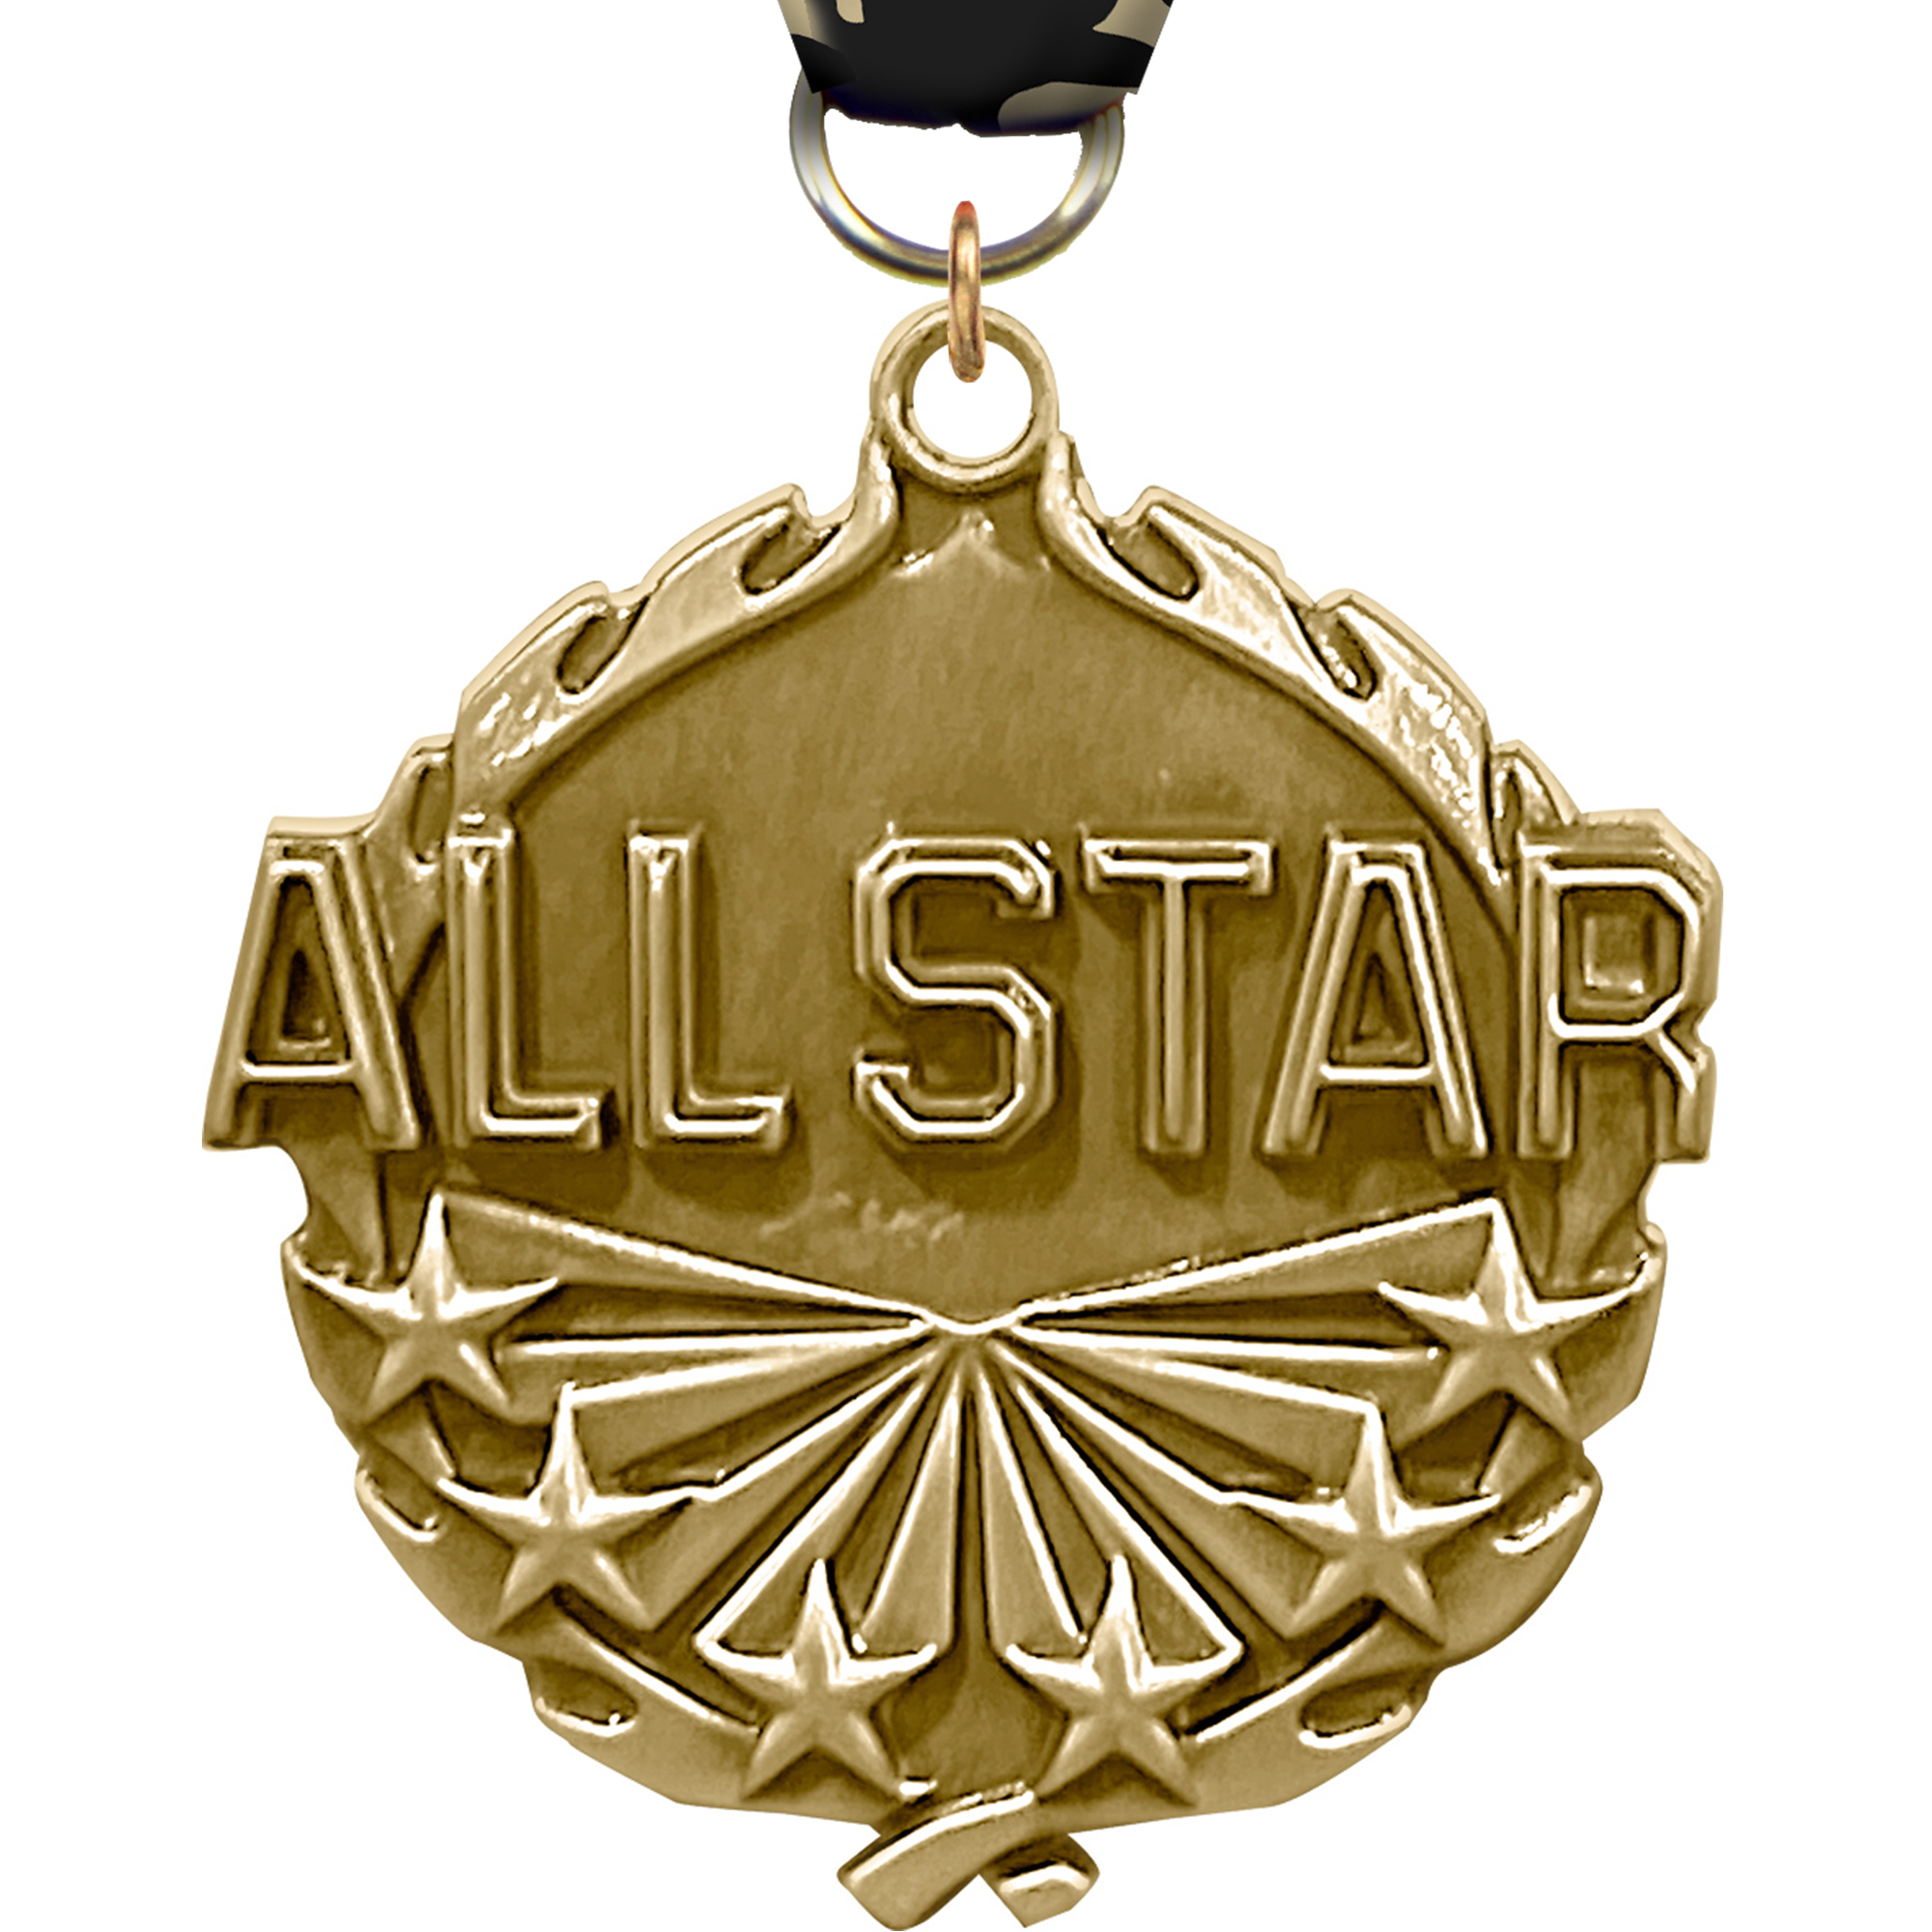 1.75 inch All Star Wreath Medal